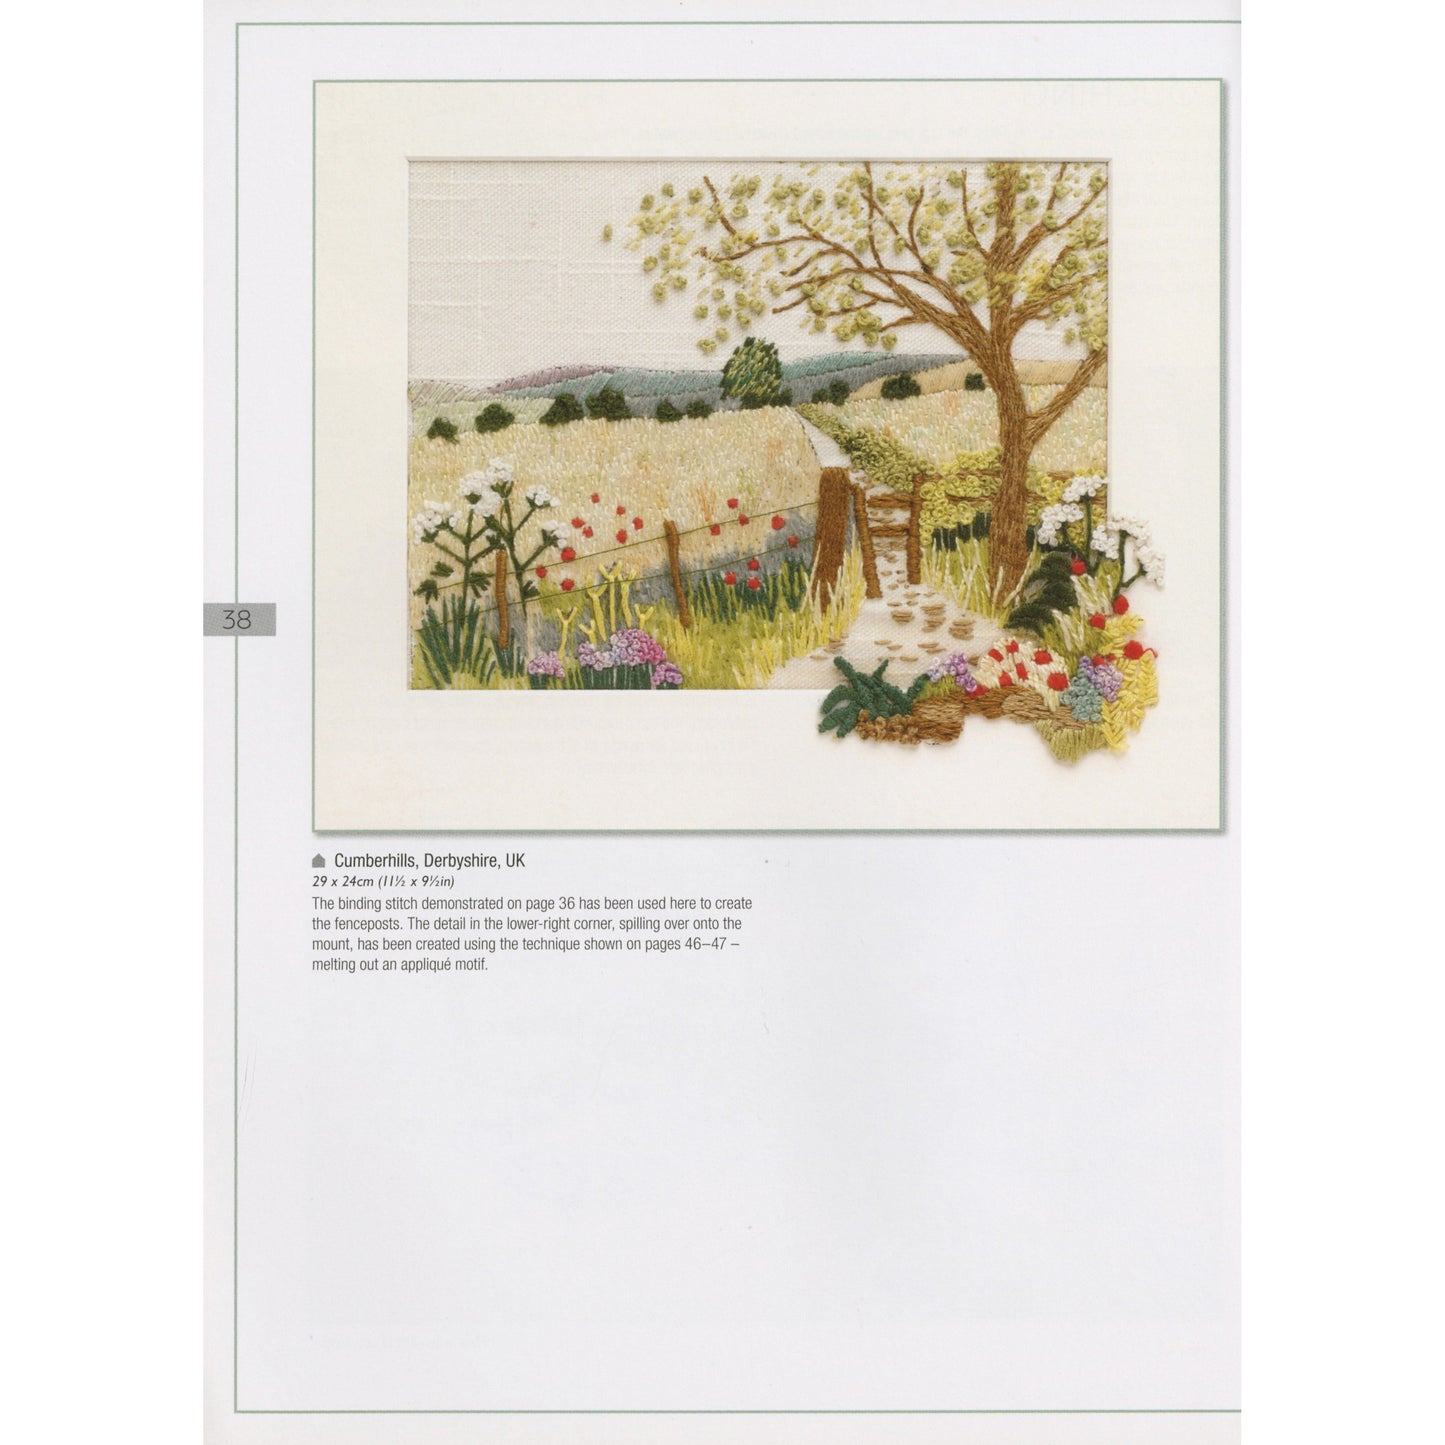 Handstitched Landscapes & Flowers Book